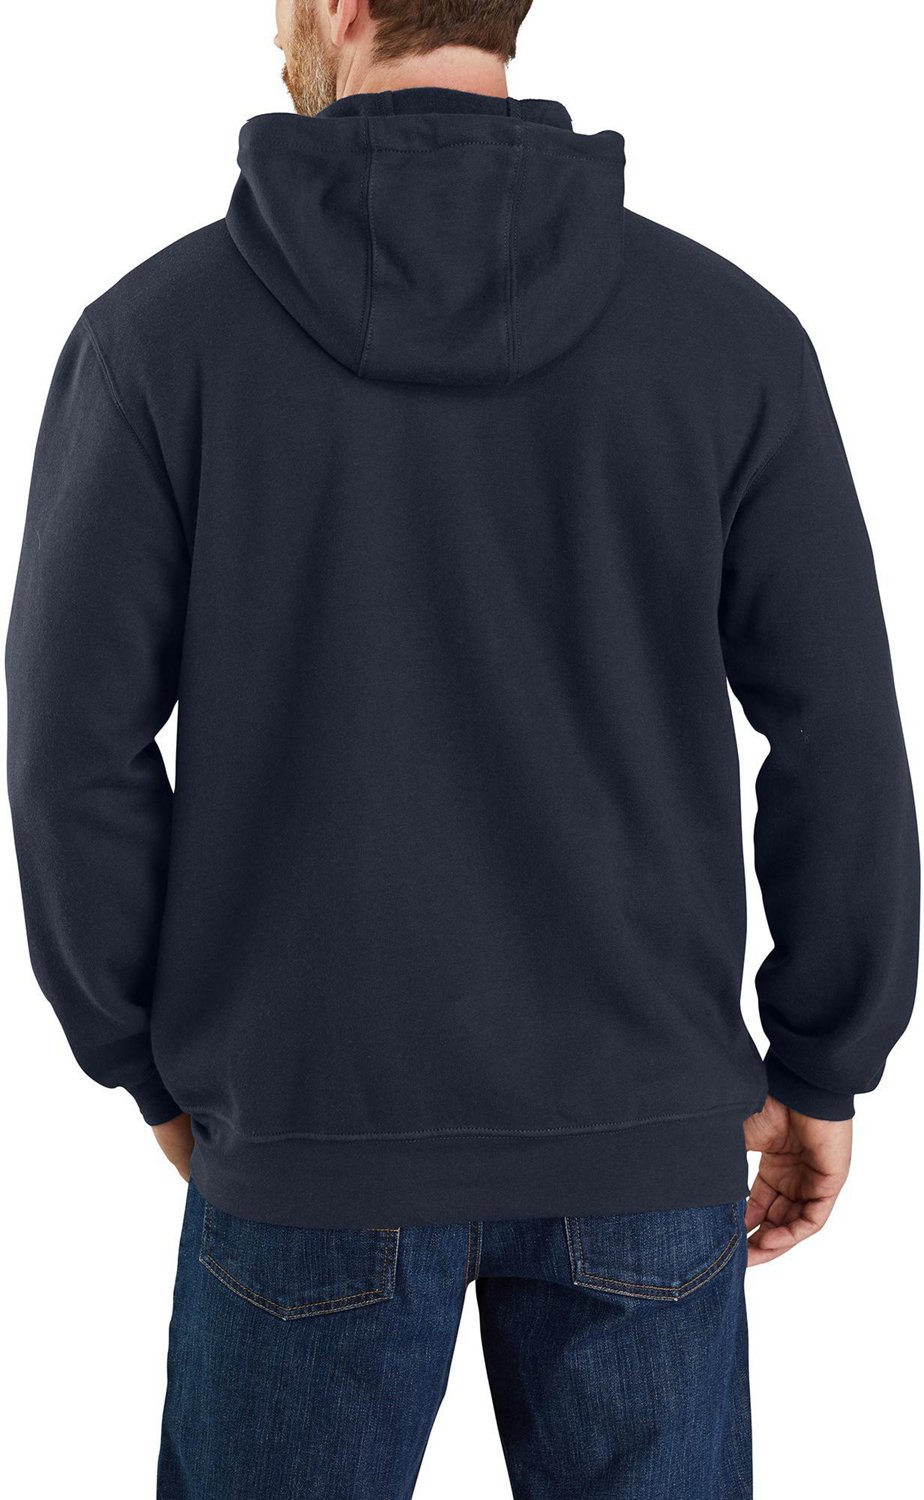 Carhartt Men's Flame Resistant Force Full Zip Sweatshirt                                                                         - view number 2